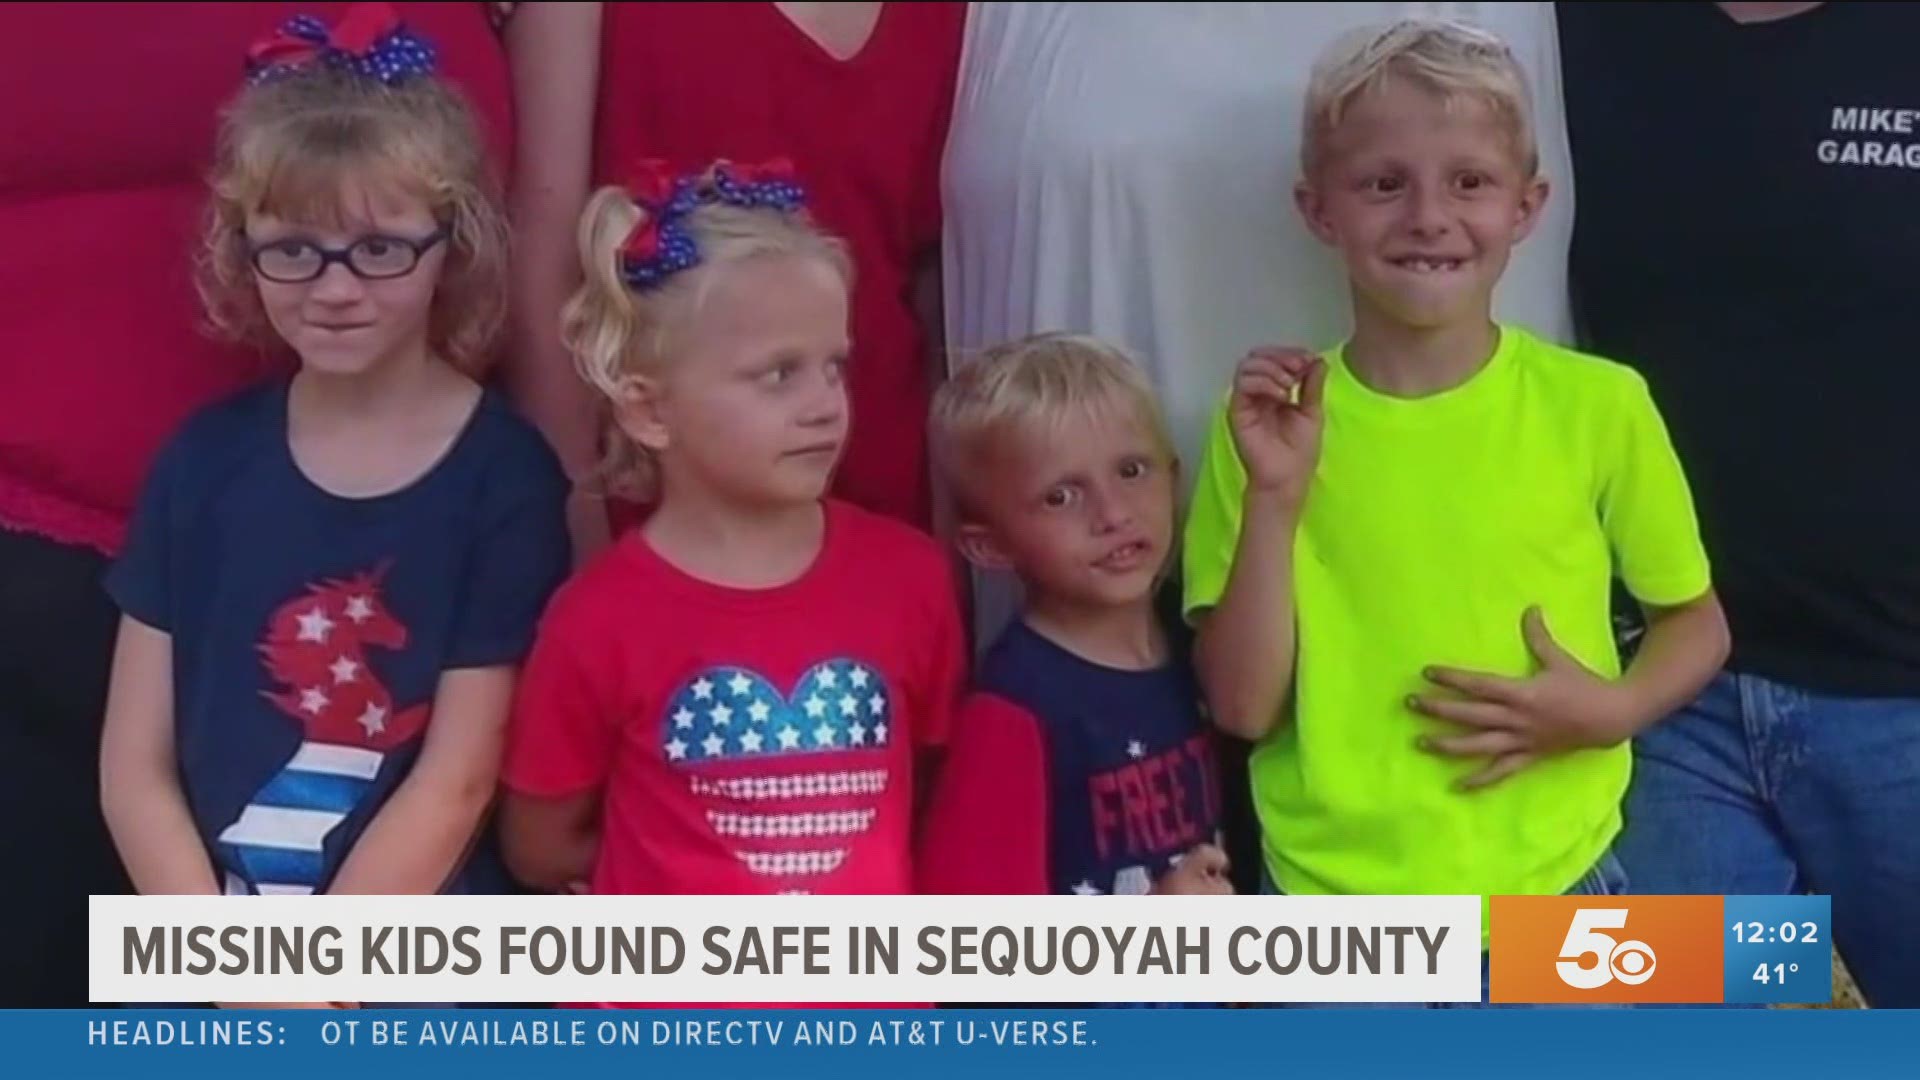 4 missing children found safe in Sequoyah County